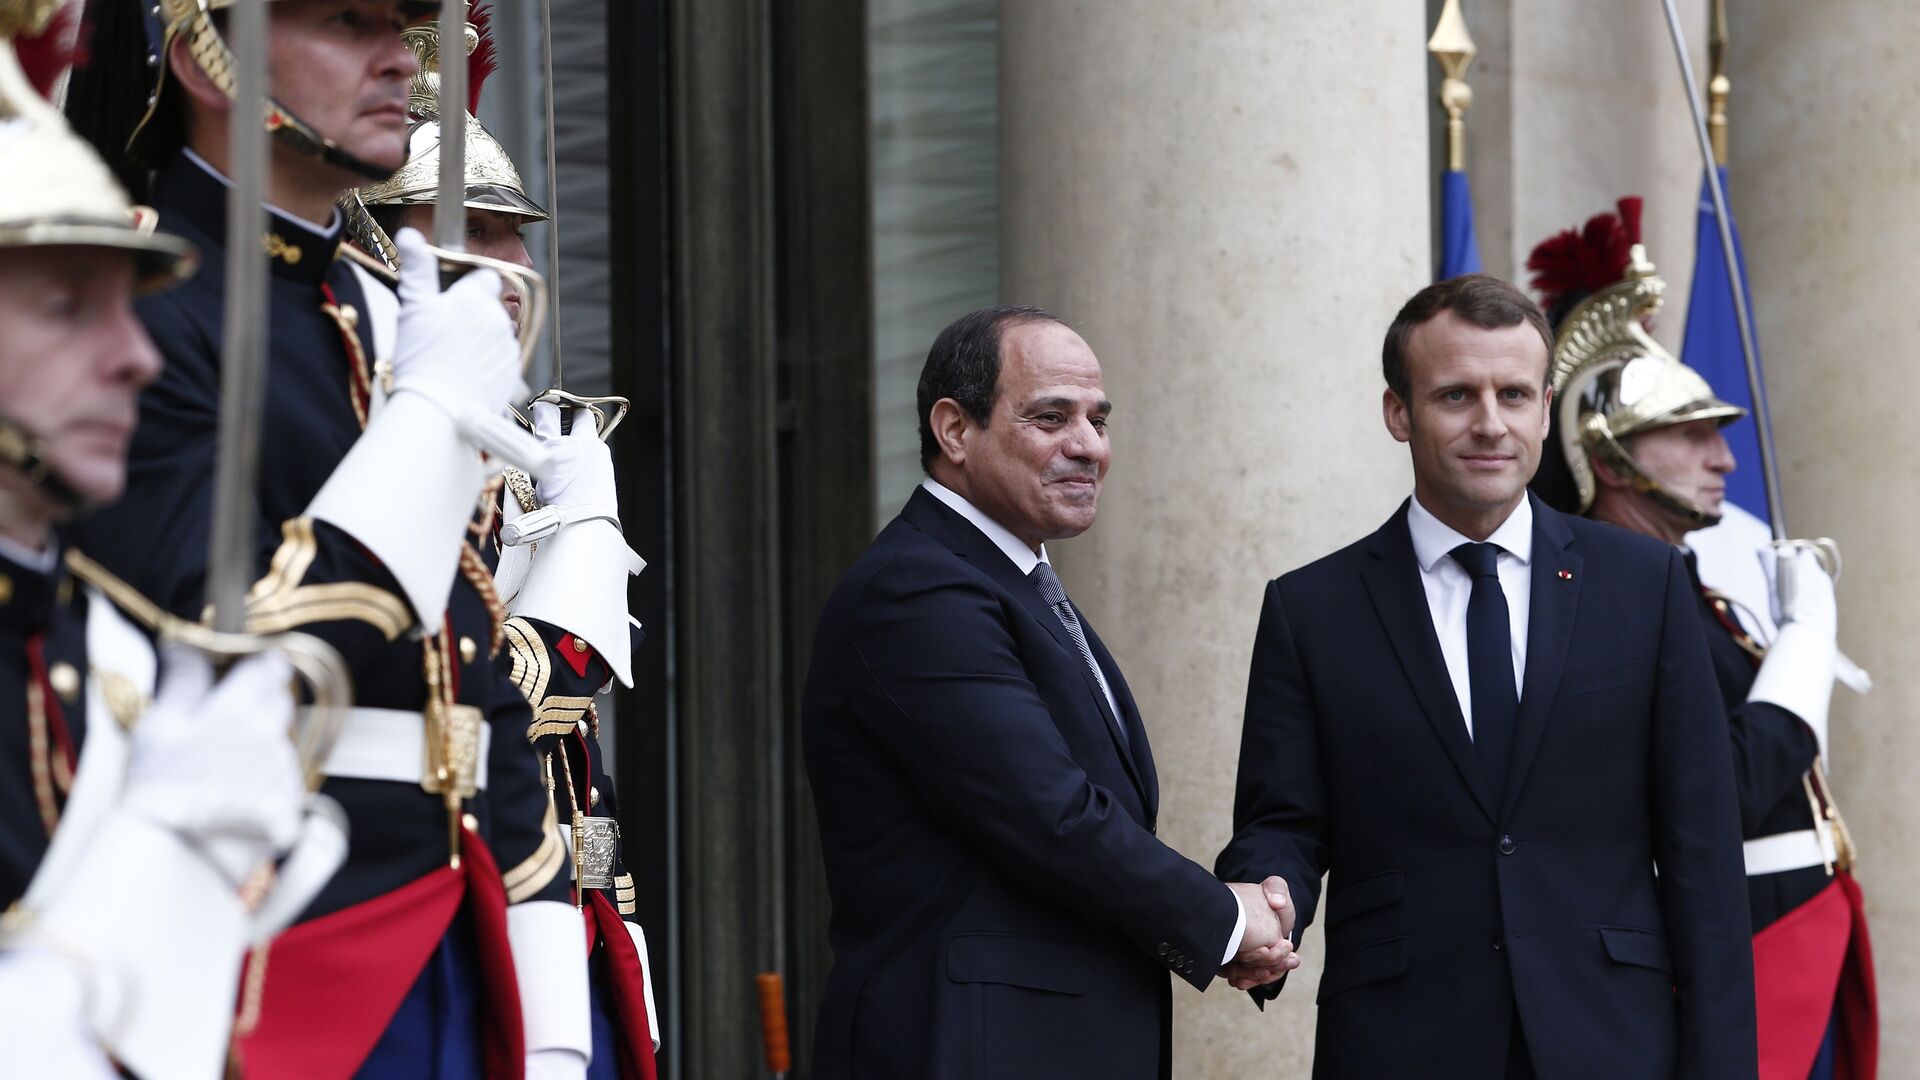  le président français Emmanuel Macron, à droite, accueille le président égyptien Abdel-Fattah el-Sissi sur les marches du palais présidentiel de l'Élysée à Paris - Sputnik Afrique, 1920, 24.11.2021